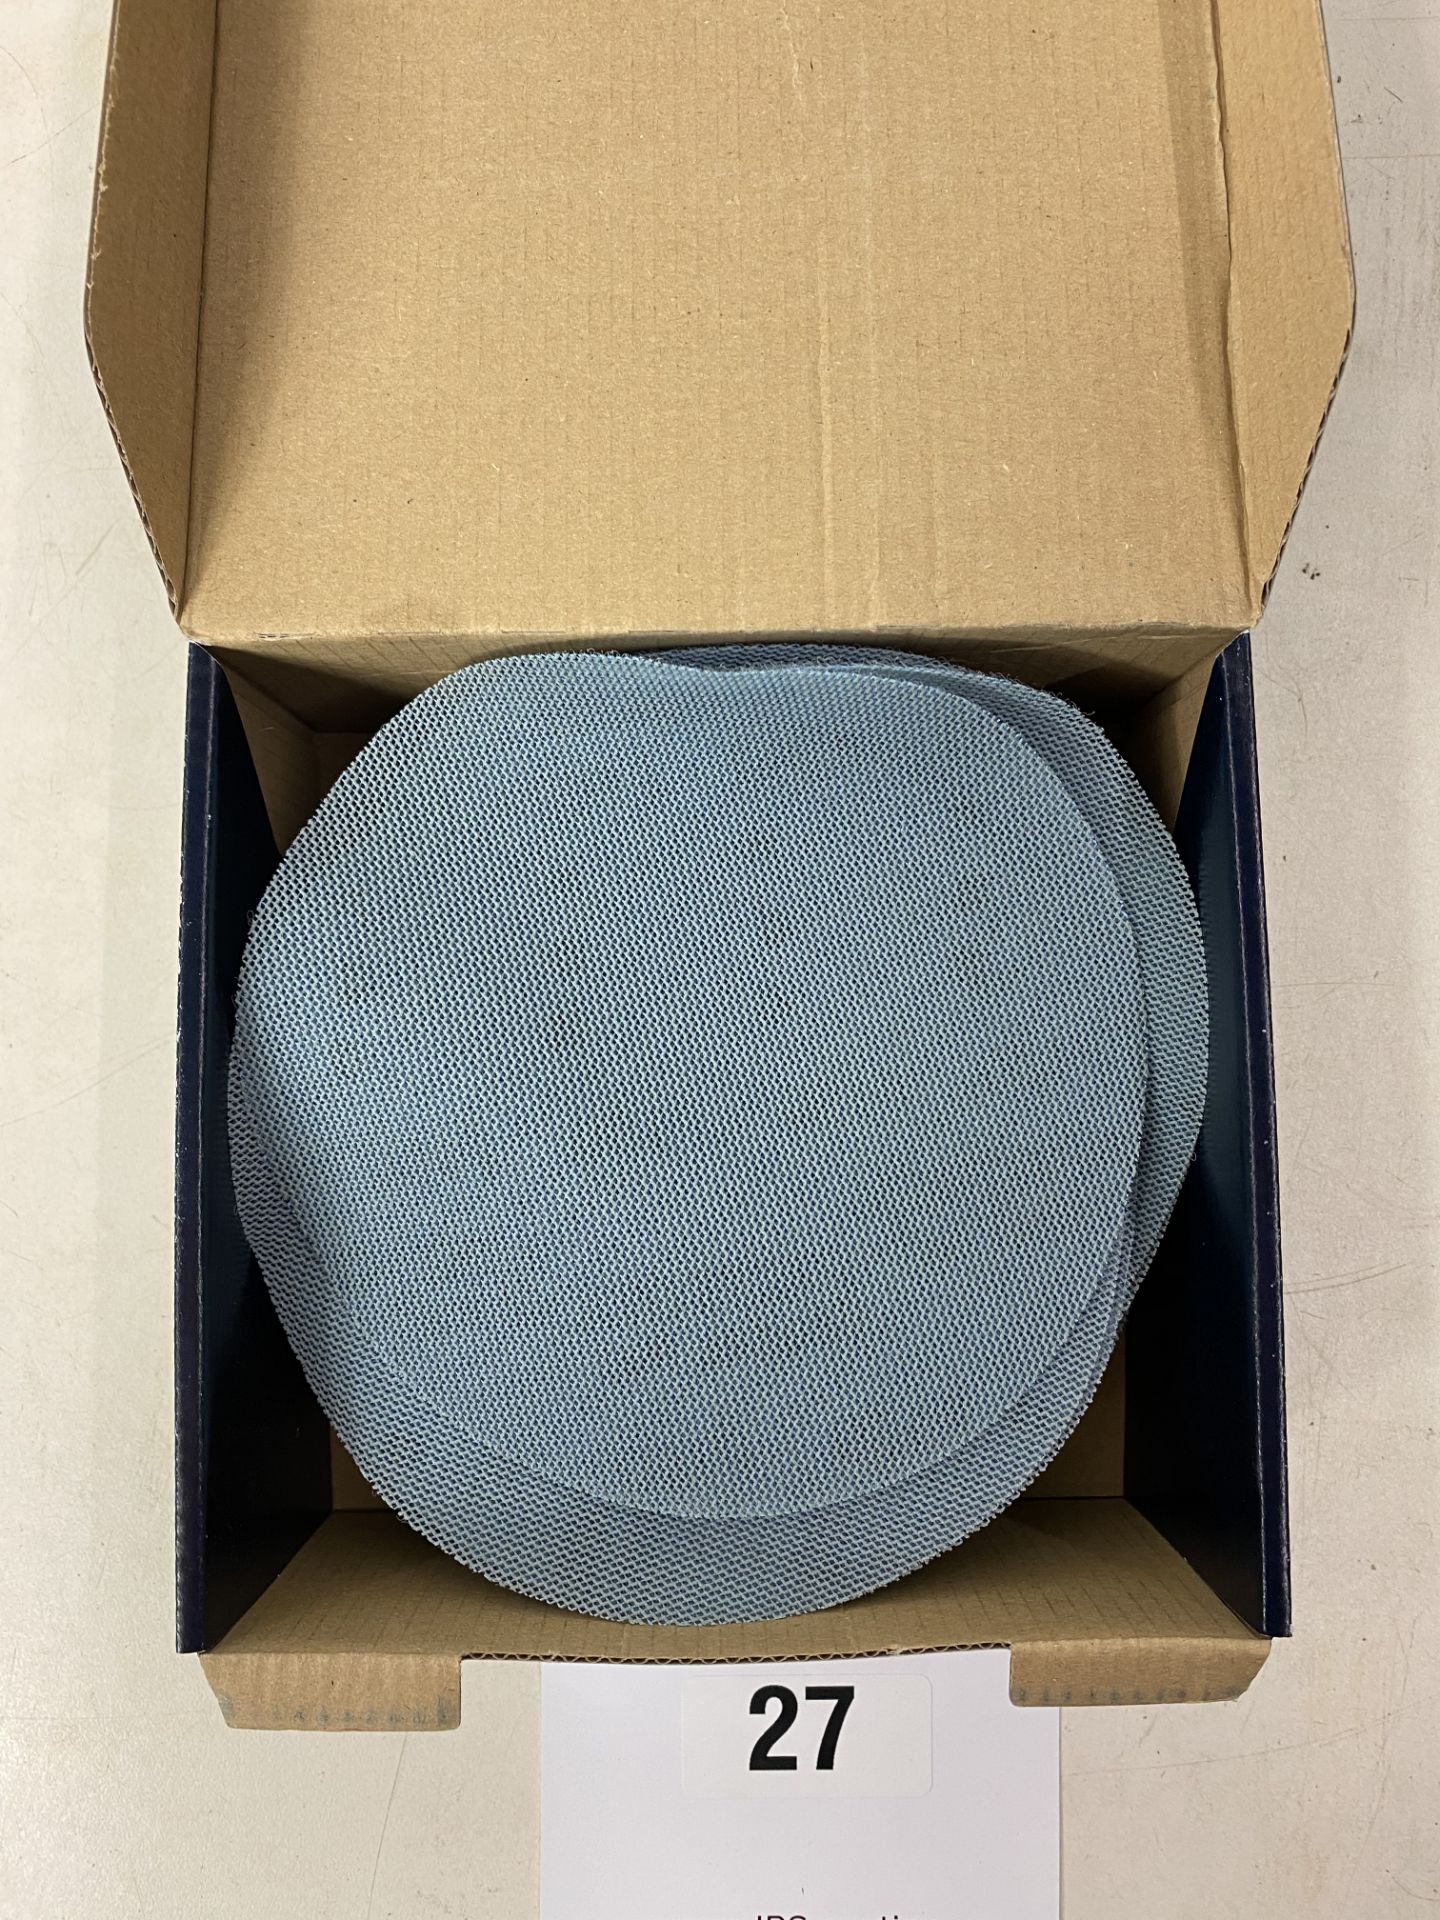 Festool 203307 Festool Sanding Discs STF D150 P180 Granat ( Box Of 50 ) - Image 2 of 2